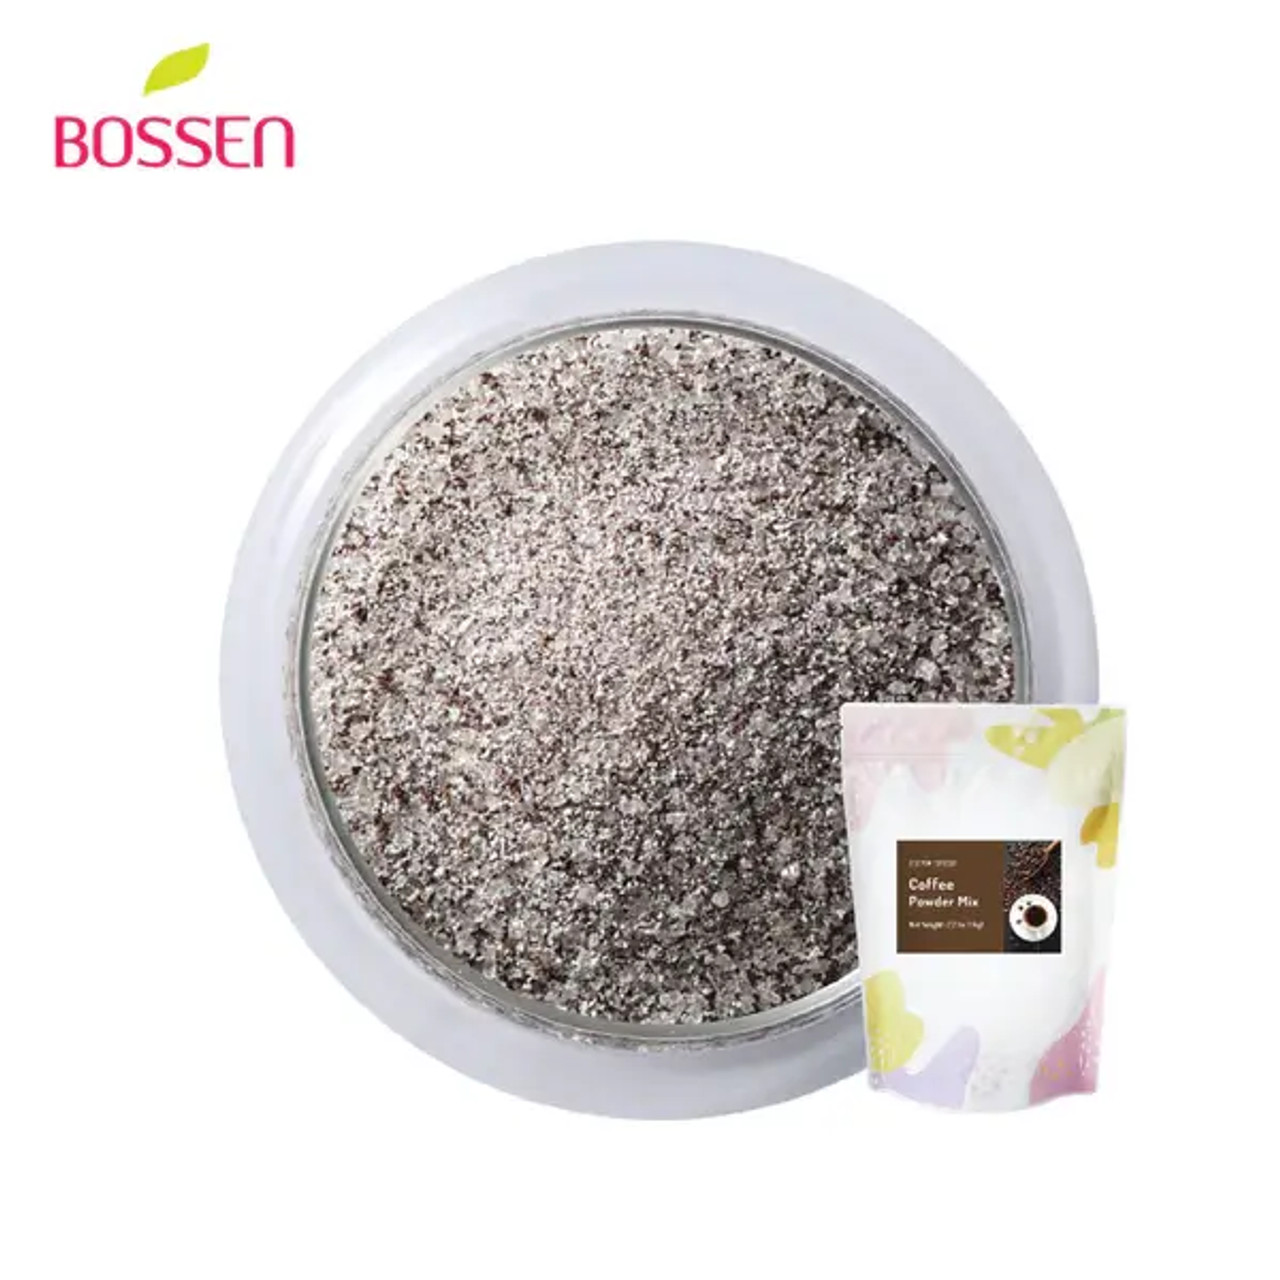 Bossen 1 kg (2.2 lb.) Coffee Powder Mix | Rich Coffee Flavor(10/Case)-Chicken Pieces